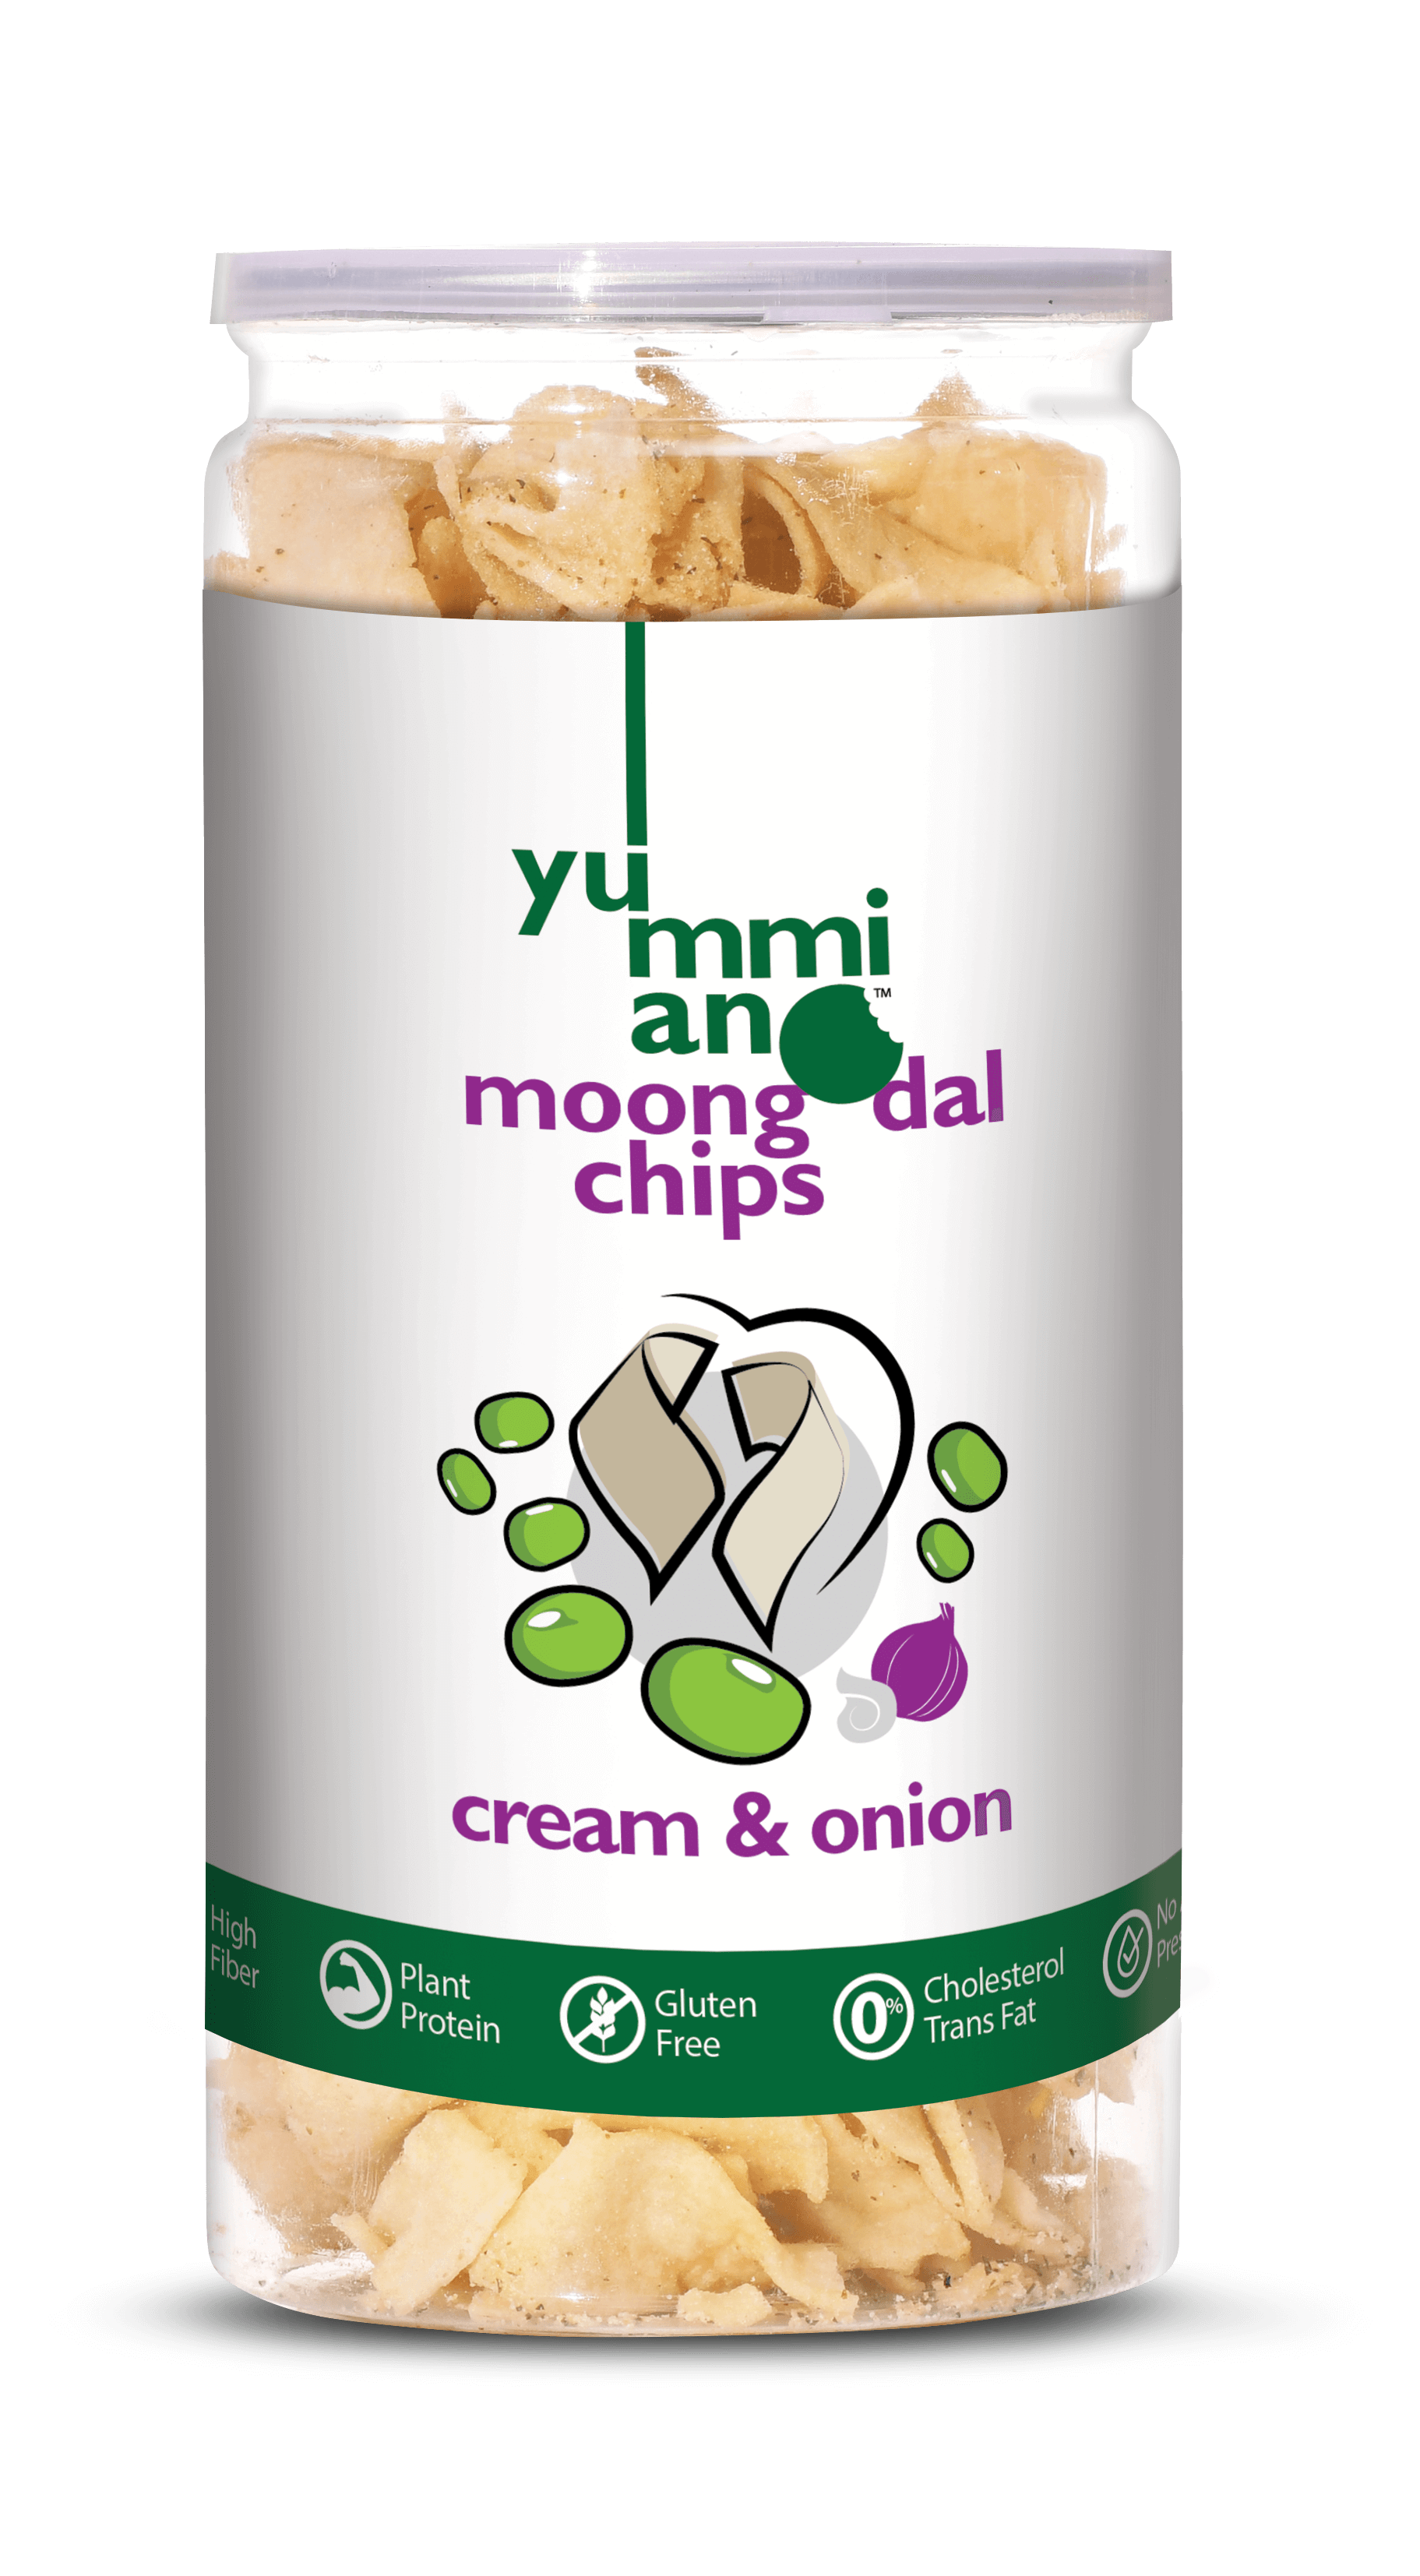 Yummiano Moong Dal Chips â€šÃ„Ã¶âˆšÃ‘âˆšÂ¨ Cream & Onion Image